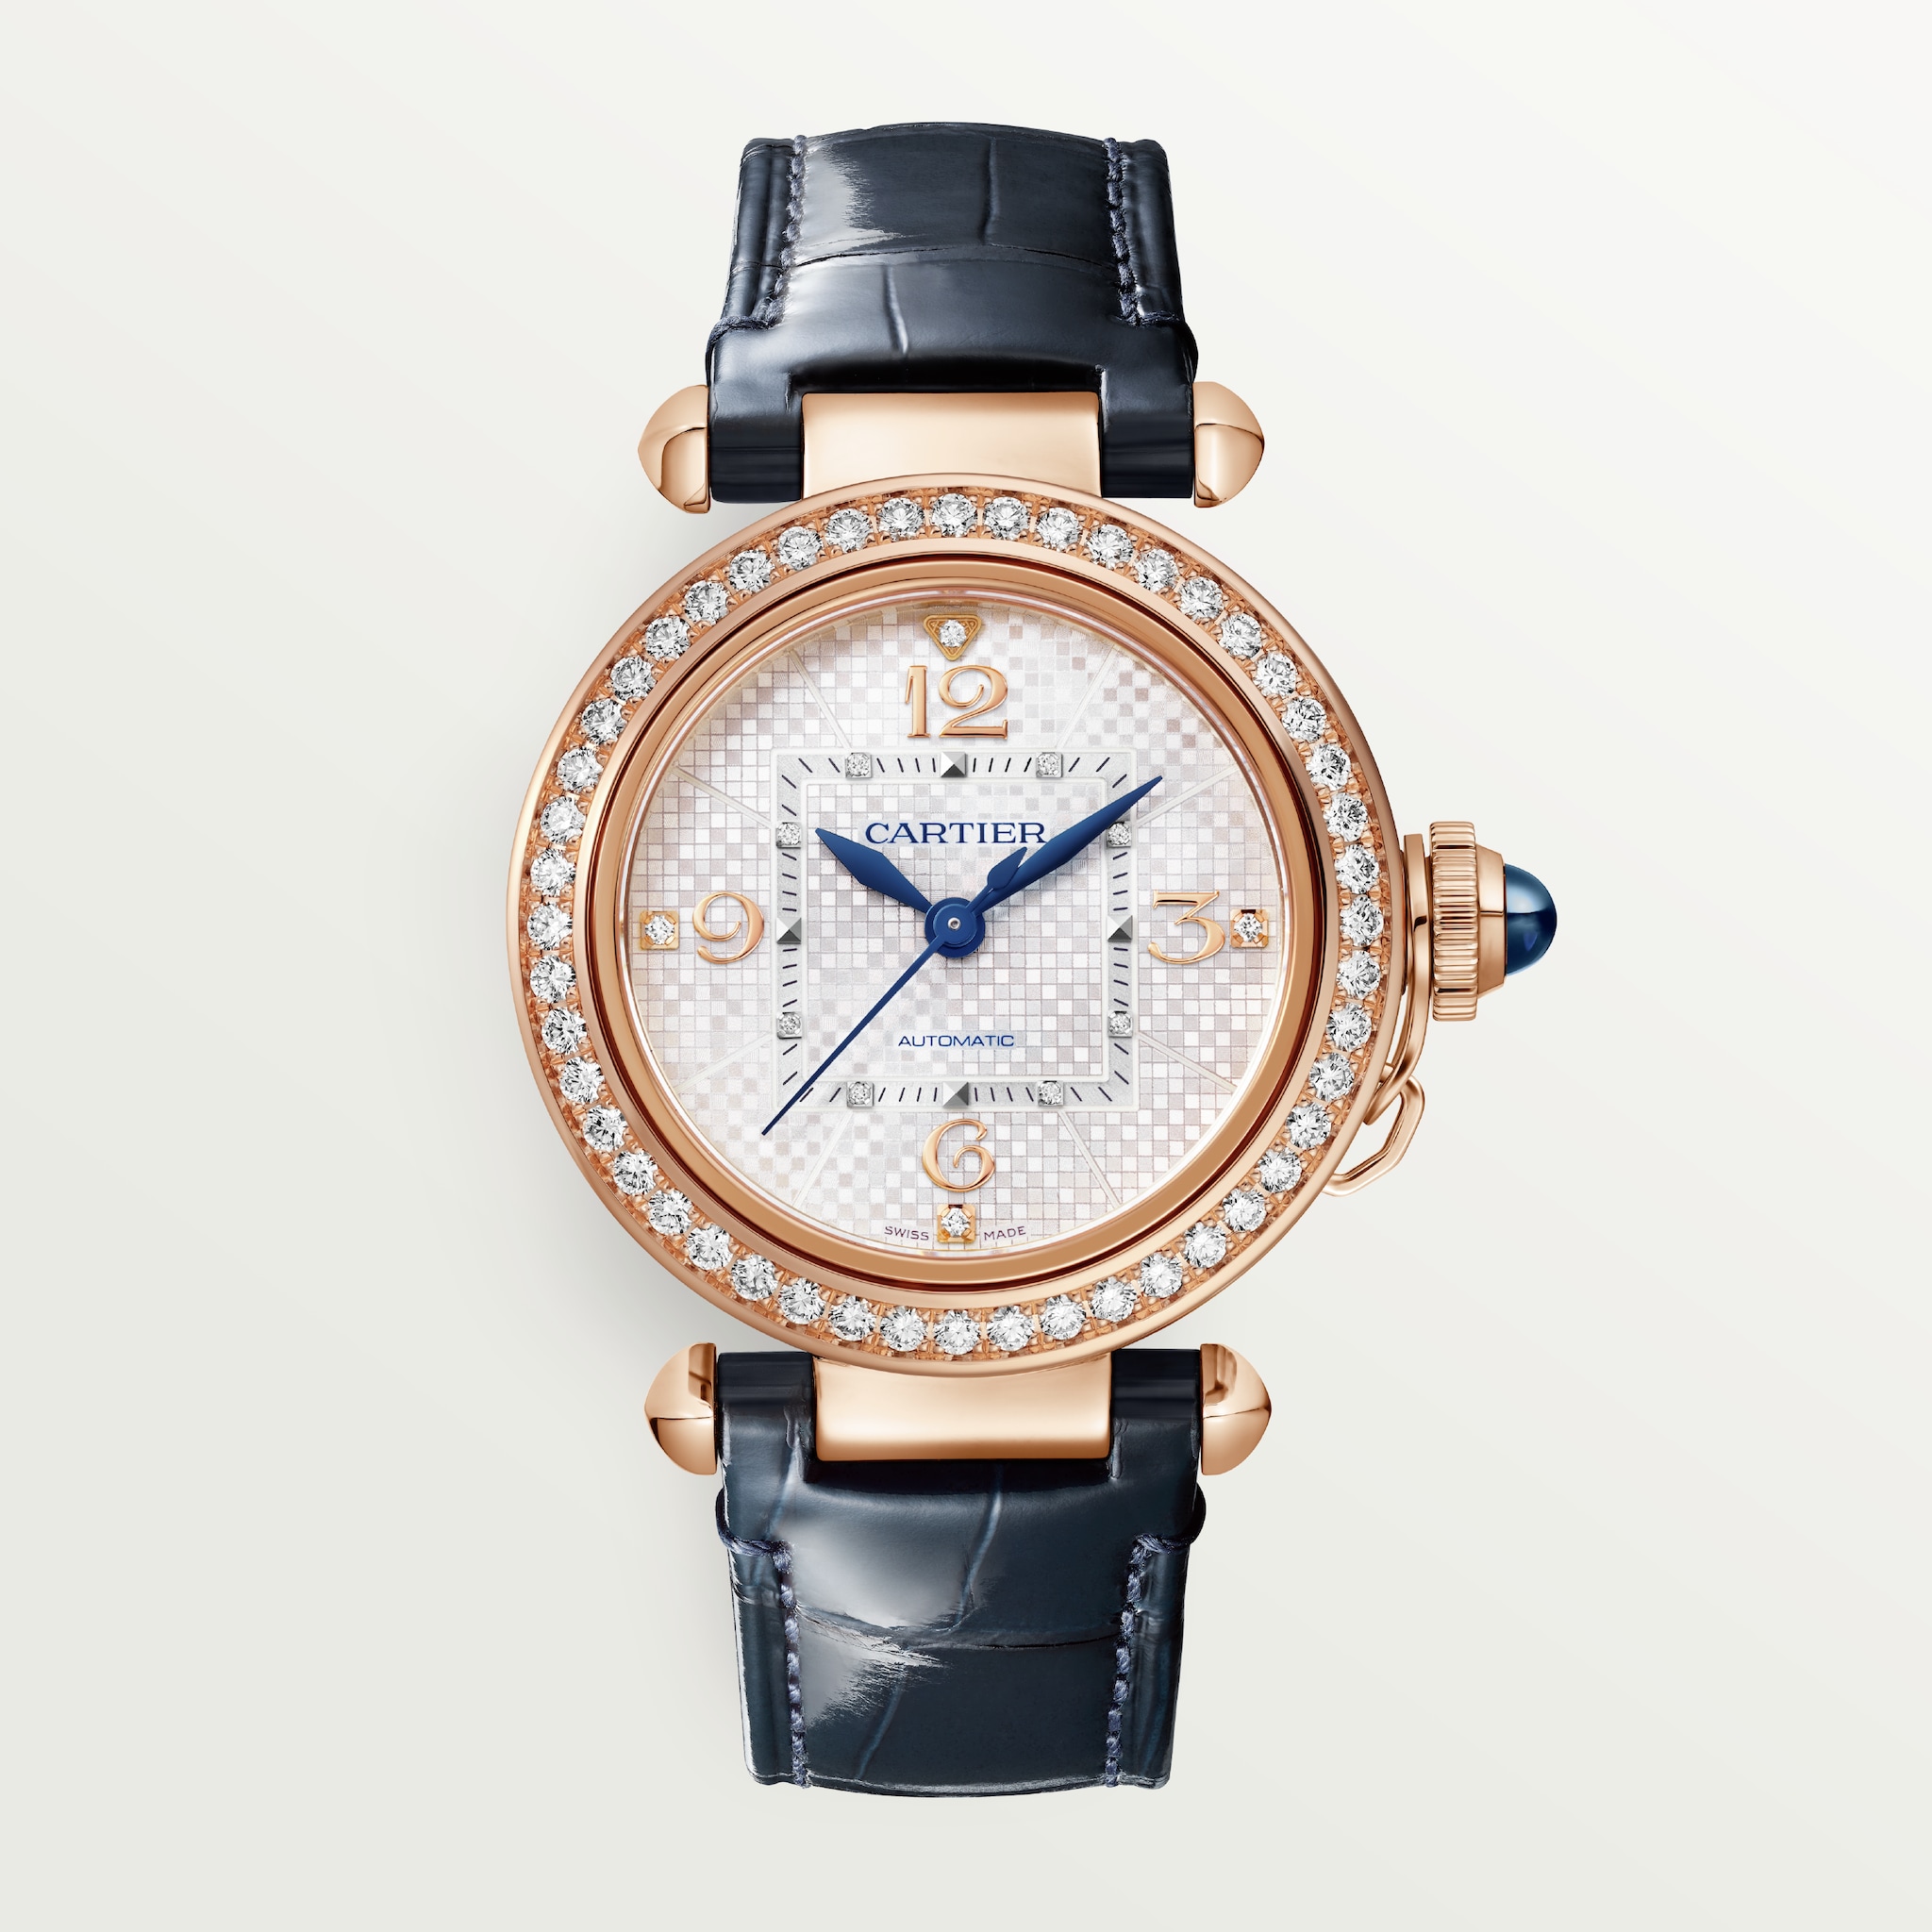 Pasha de Cartier watch35 mm, automatic movement, rose gold, interchangeable leather straps